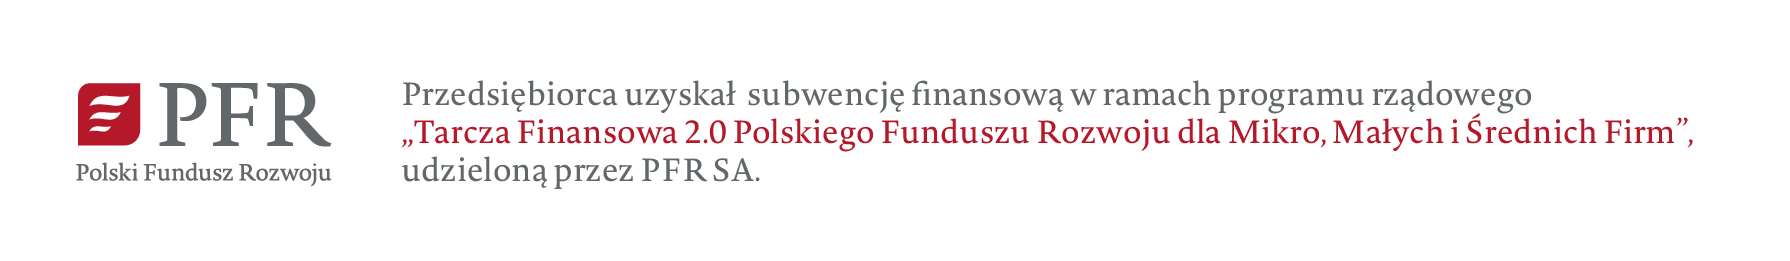 Polski Fundusz Rowoju